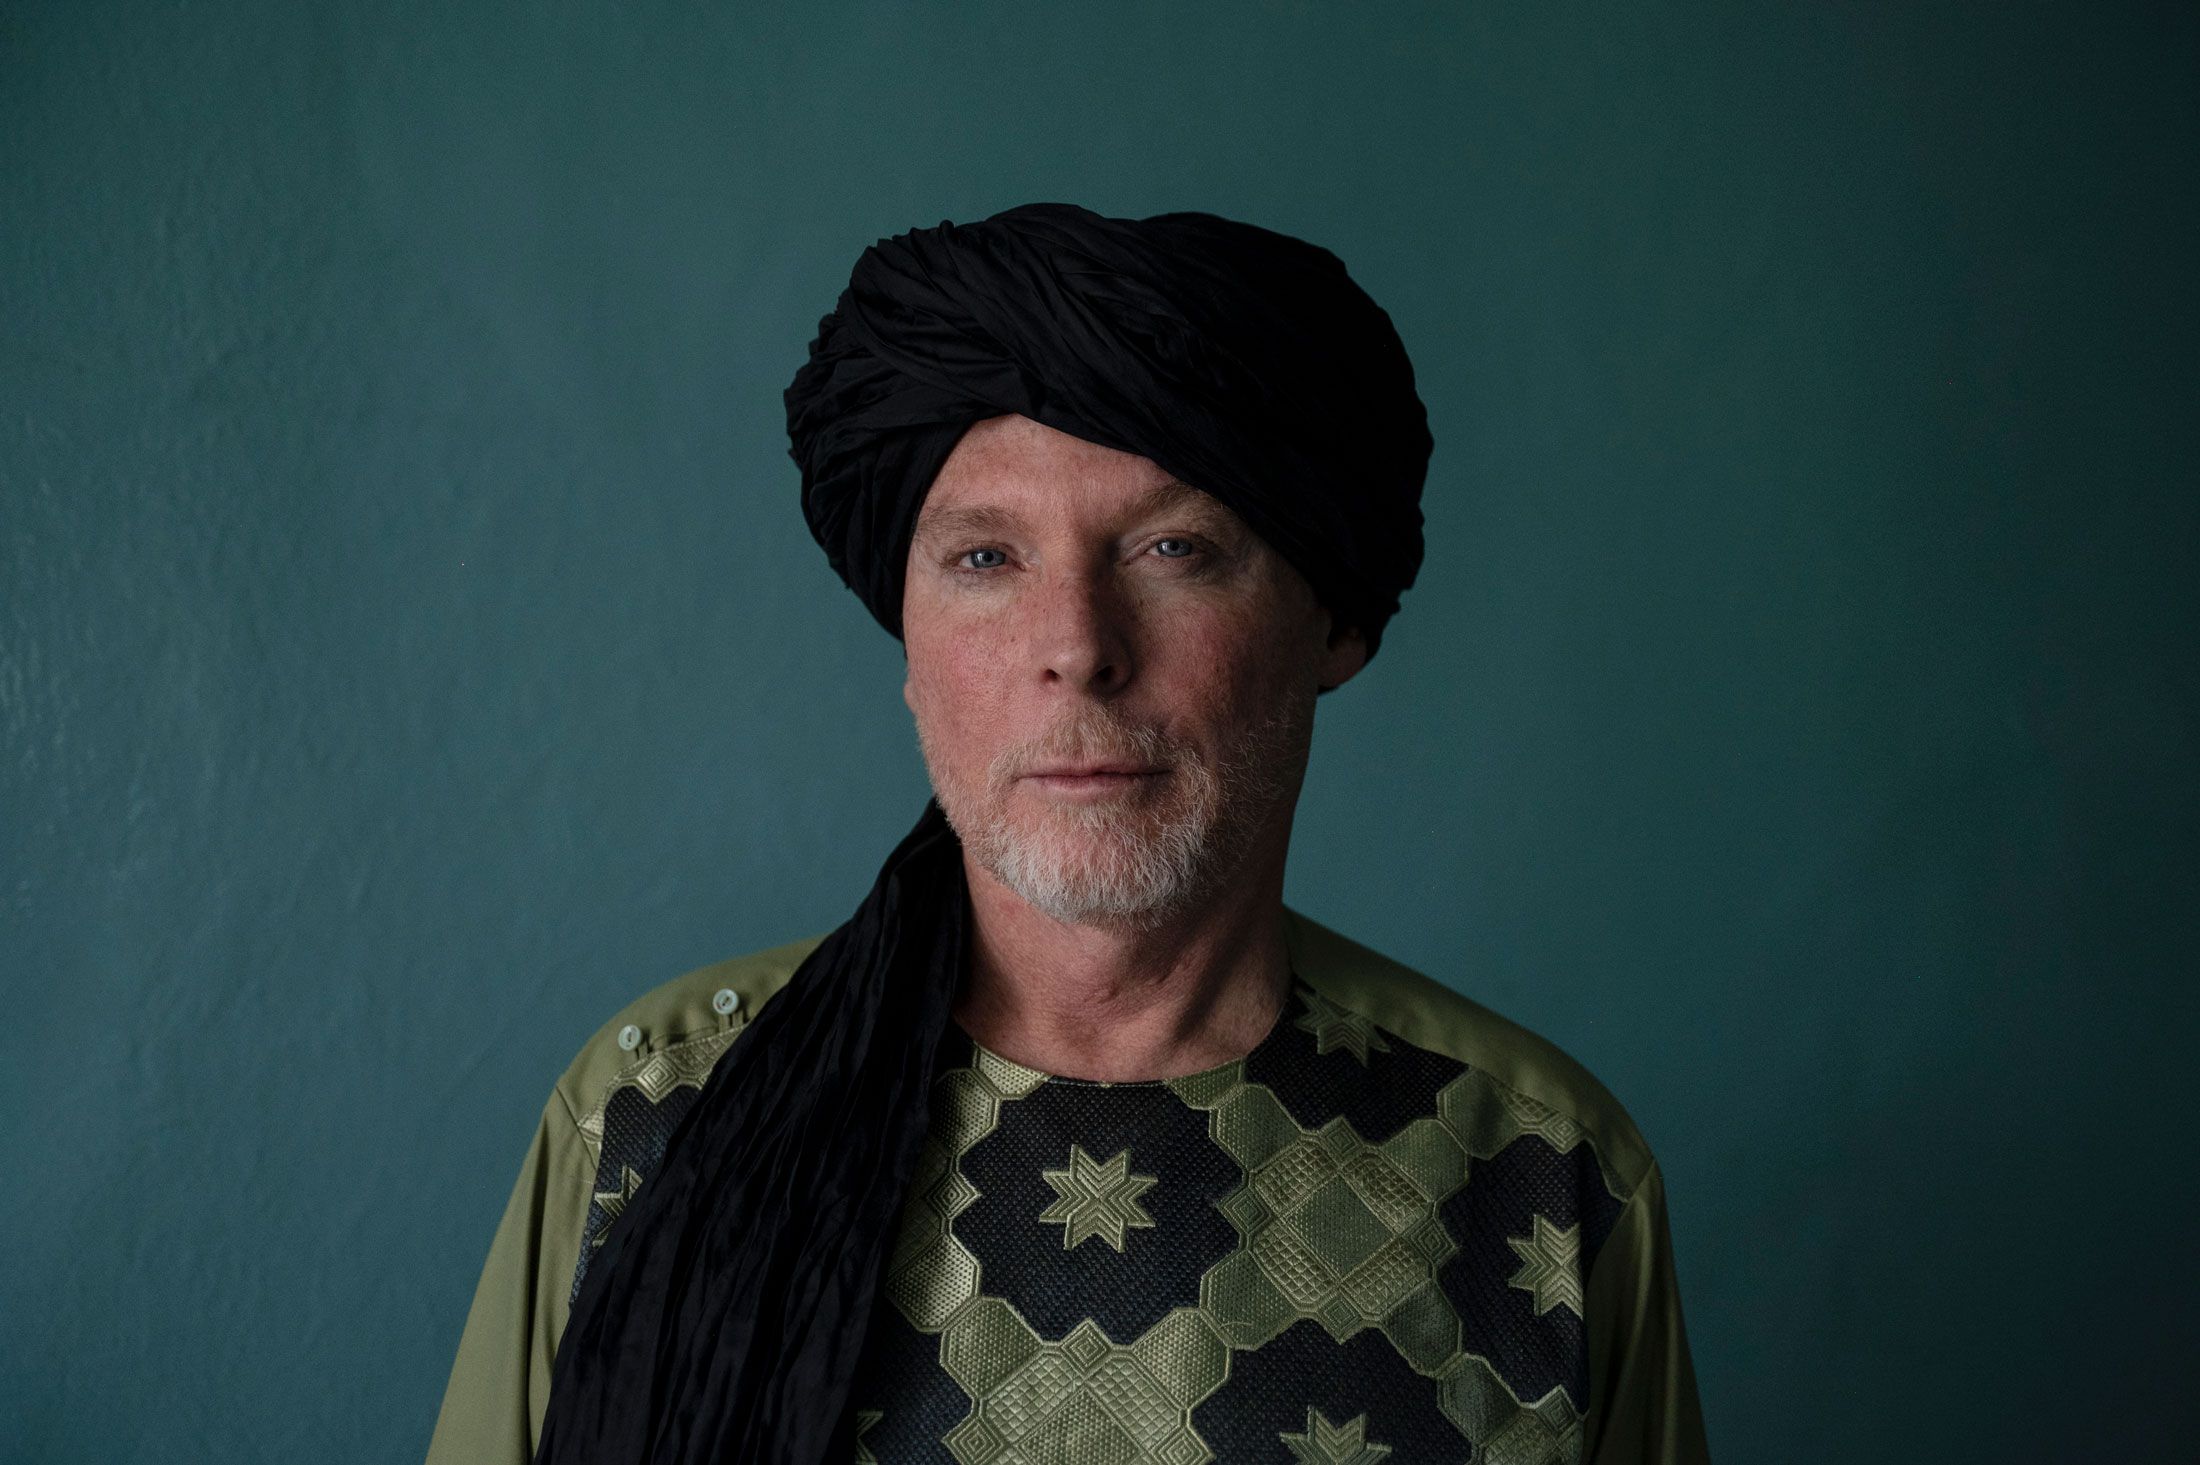 Opettaja oli talibanin vankina kolme vuotta - hän vapautui, mutta palasi Kabuliin ja tukee nyt talibania